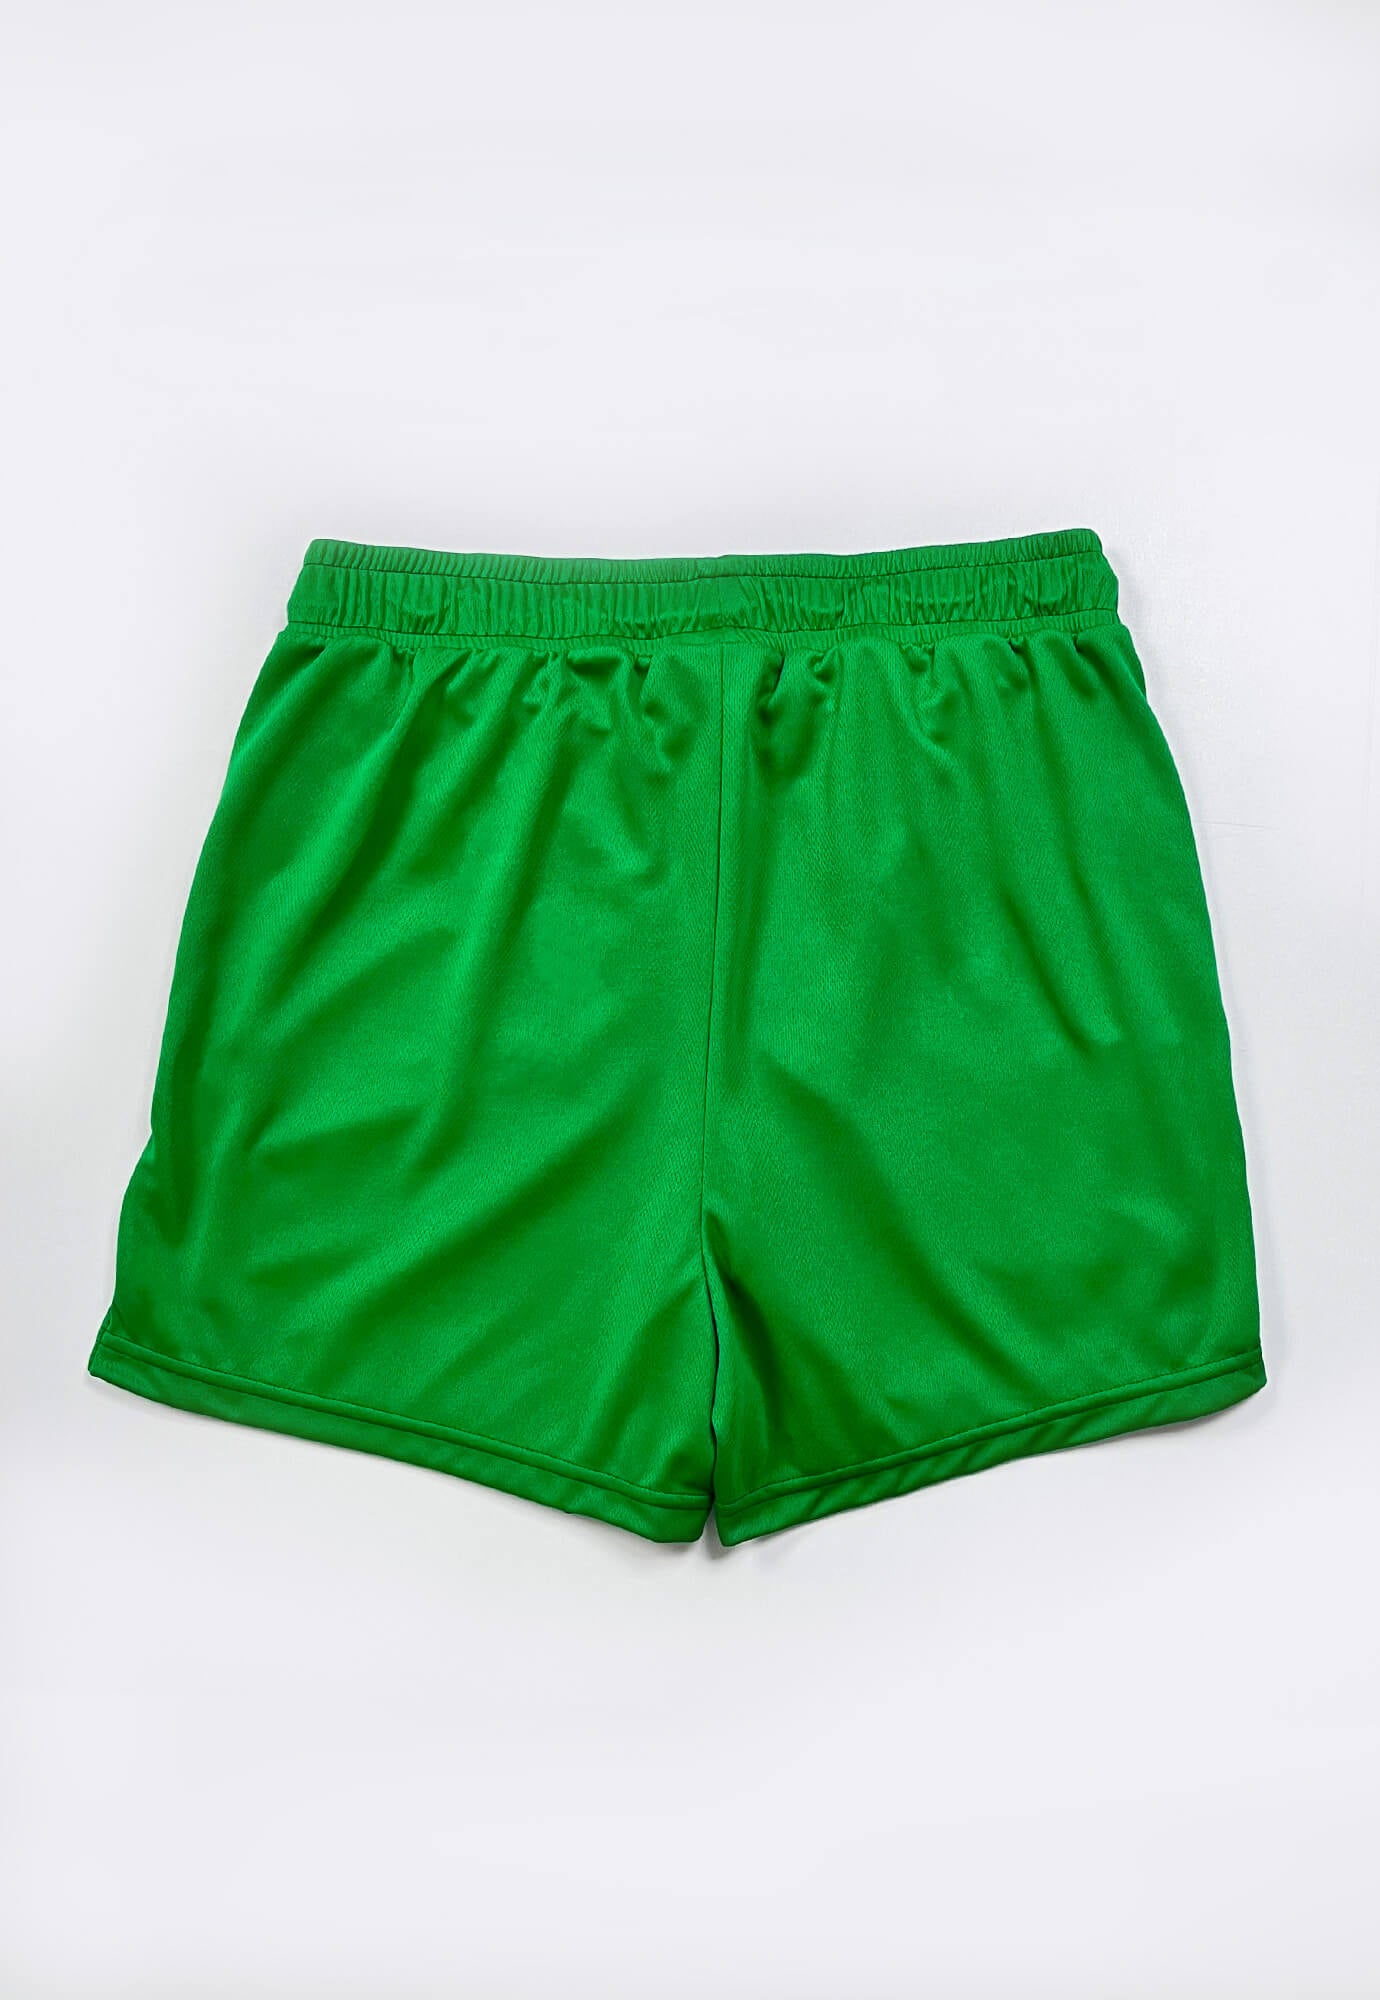 Short deportivo verde oscuro fondo entero, ciclista interno, cordón ajustable y bolsillos laterales para hombre